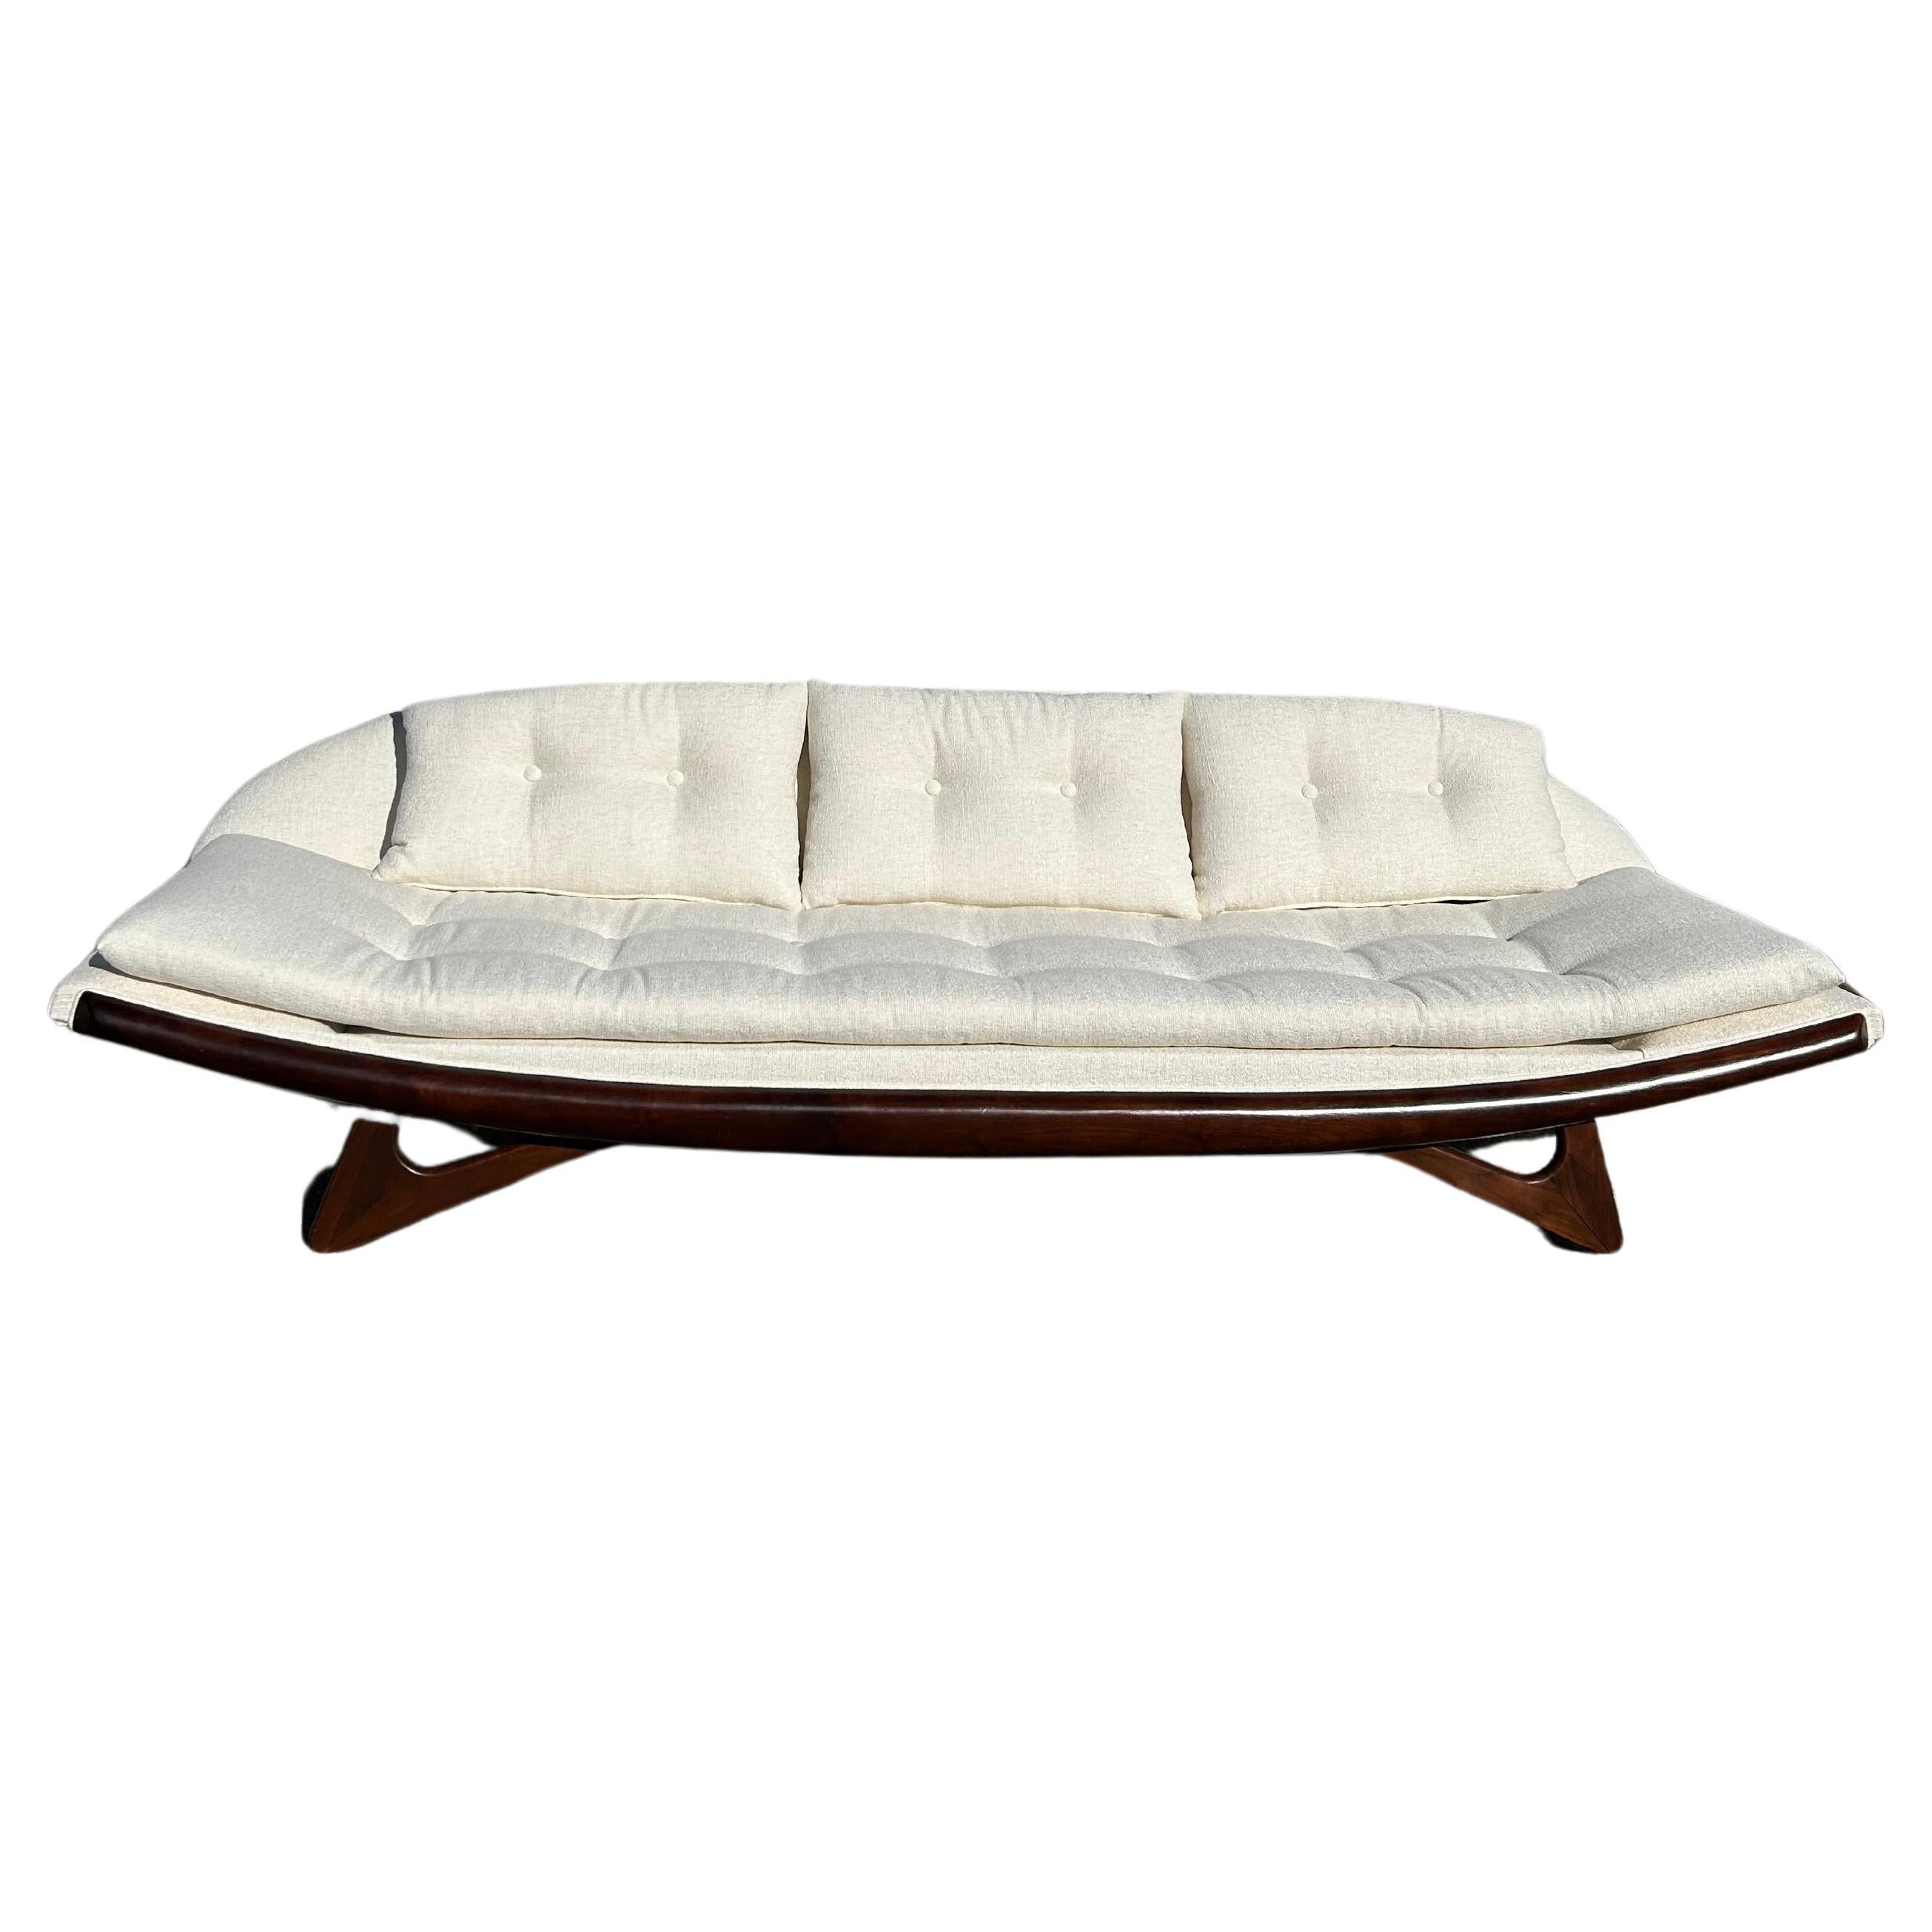 Expertisch restauriertes, armloses Gondola-Sofa von Adrian Pearsall für Craft Associates